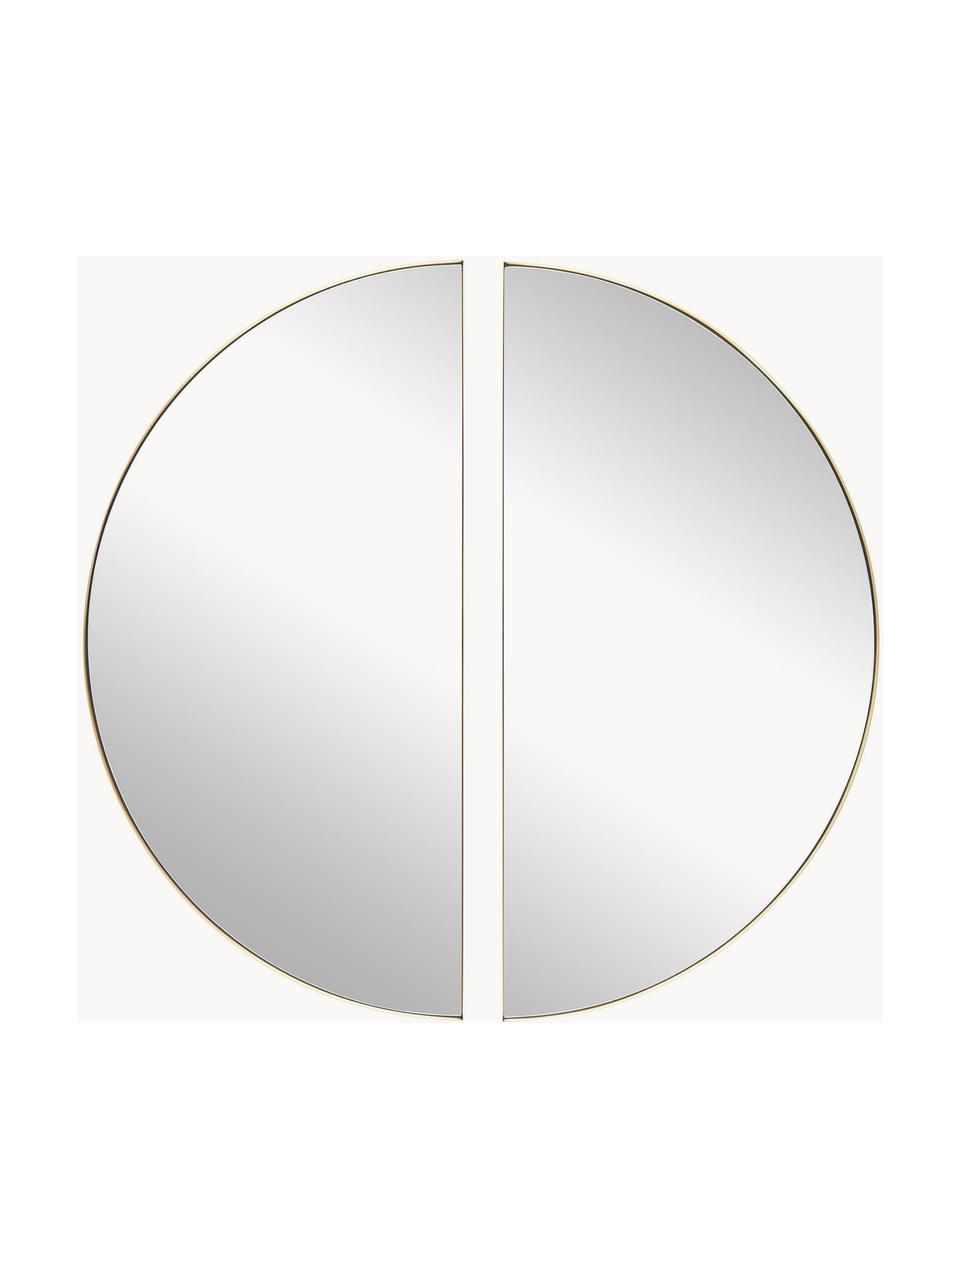 Wandspiegel Selena, 2 Stück, Rahmen: Metall, Spiegelfläche: Spiegelglas, Rückseite: Mitteldichte Holzfaserpla, Goldfarben, Ø 100 cm